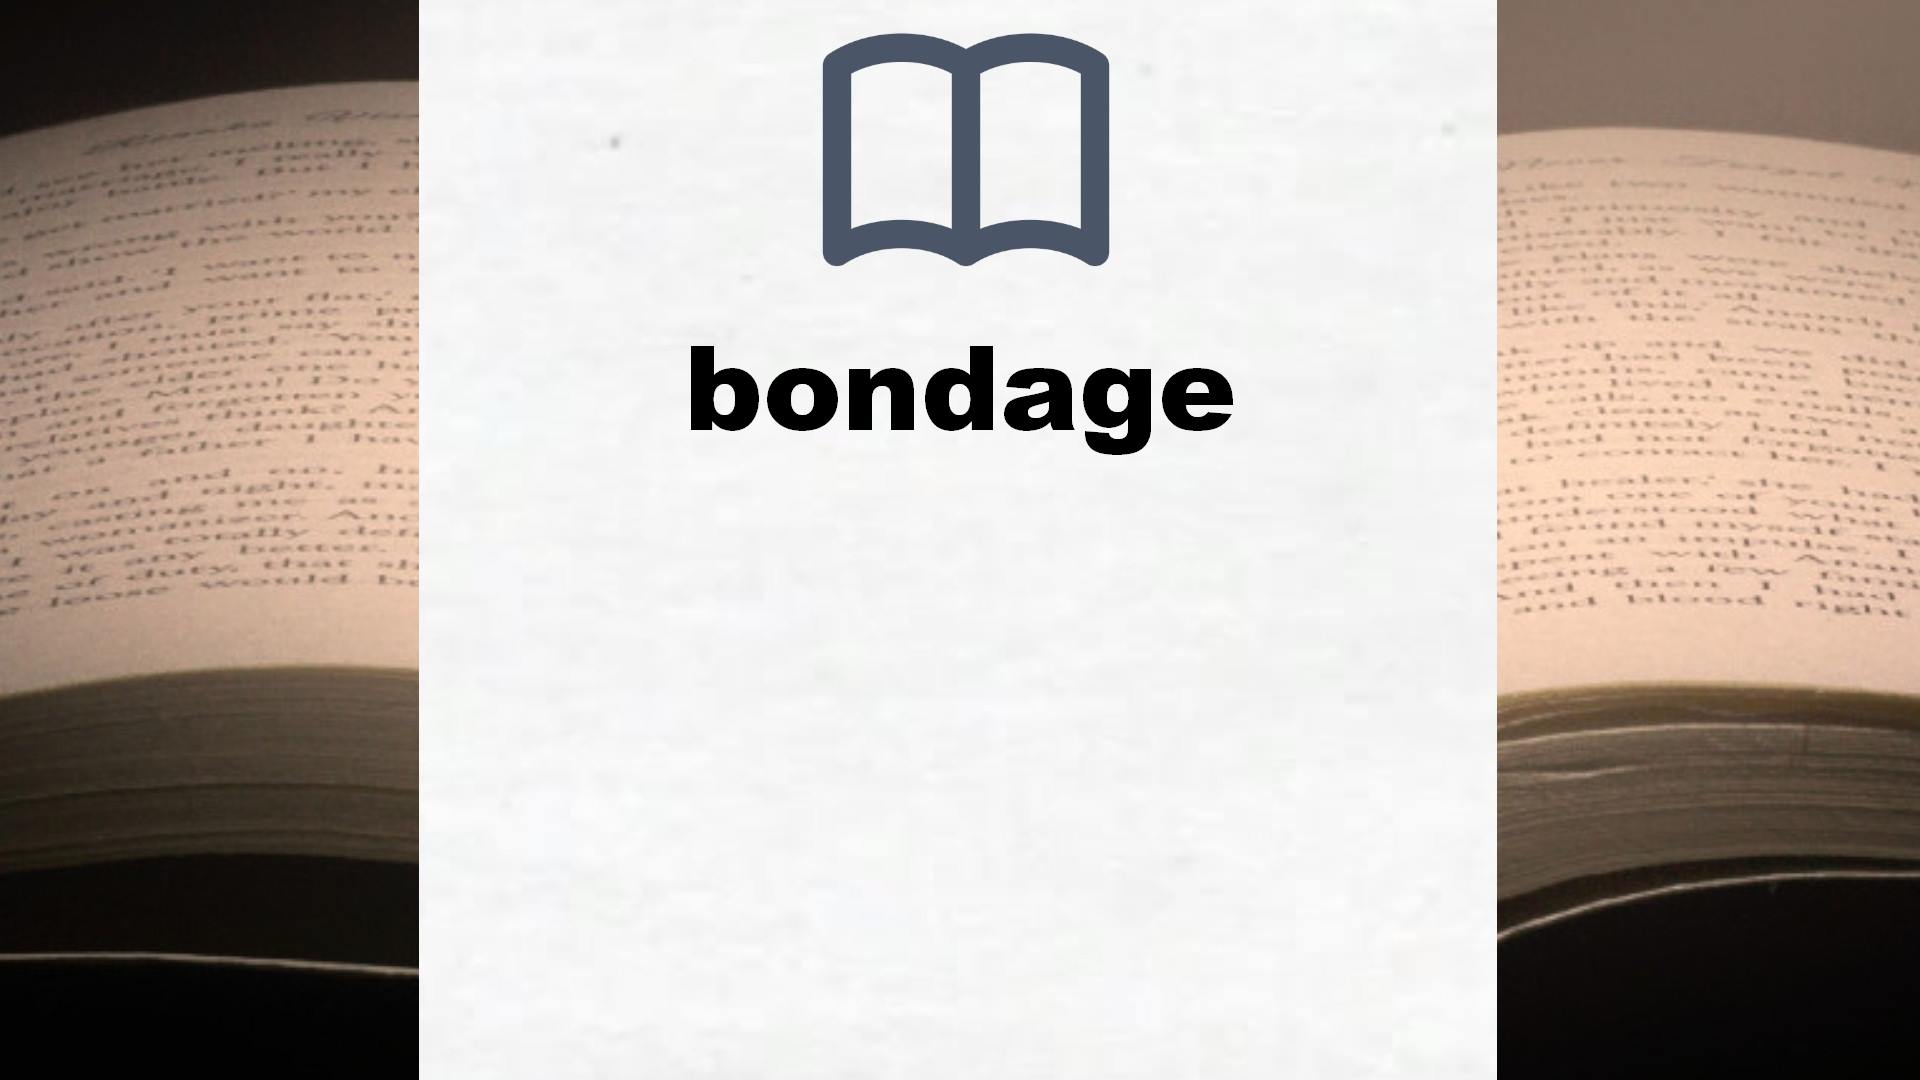 Libros sobre bondage